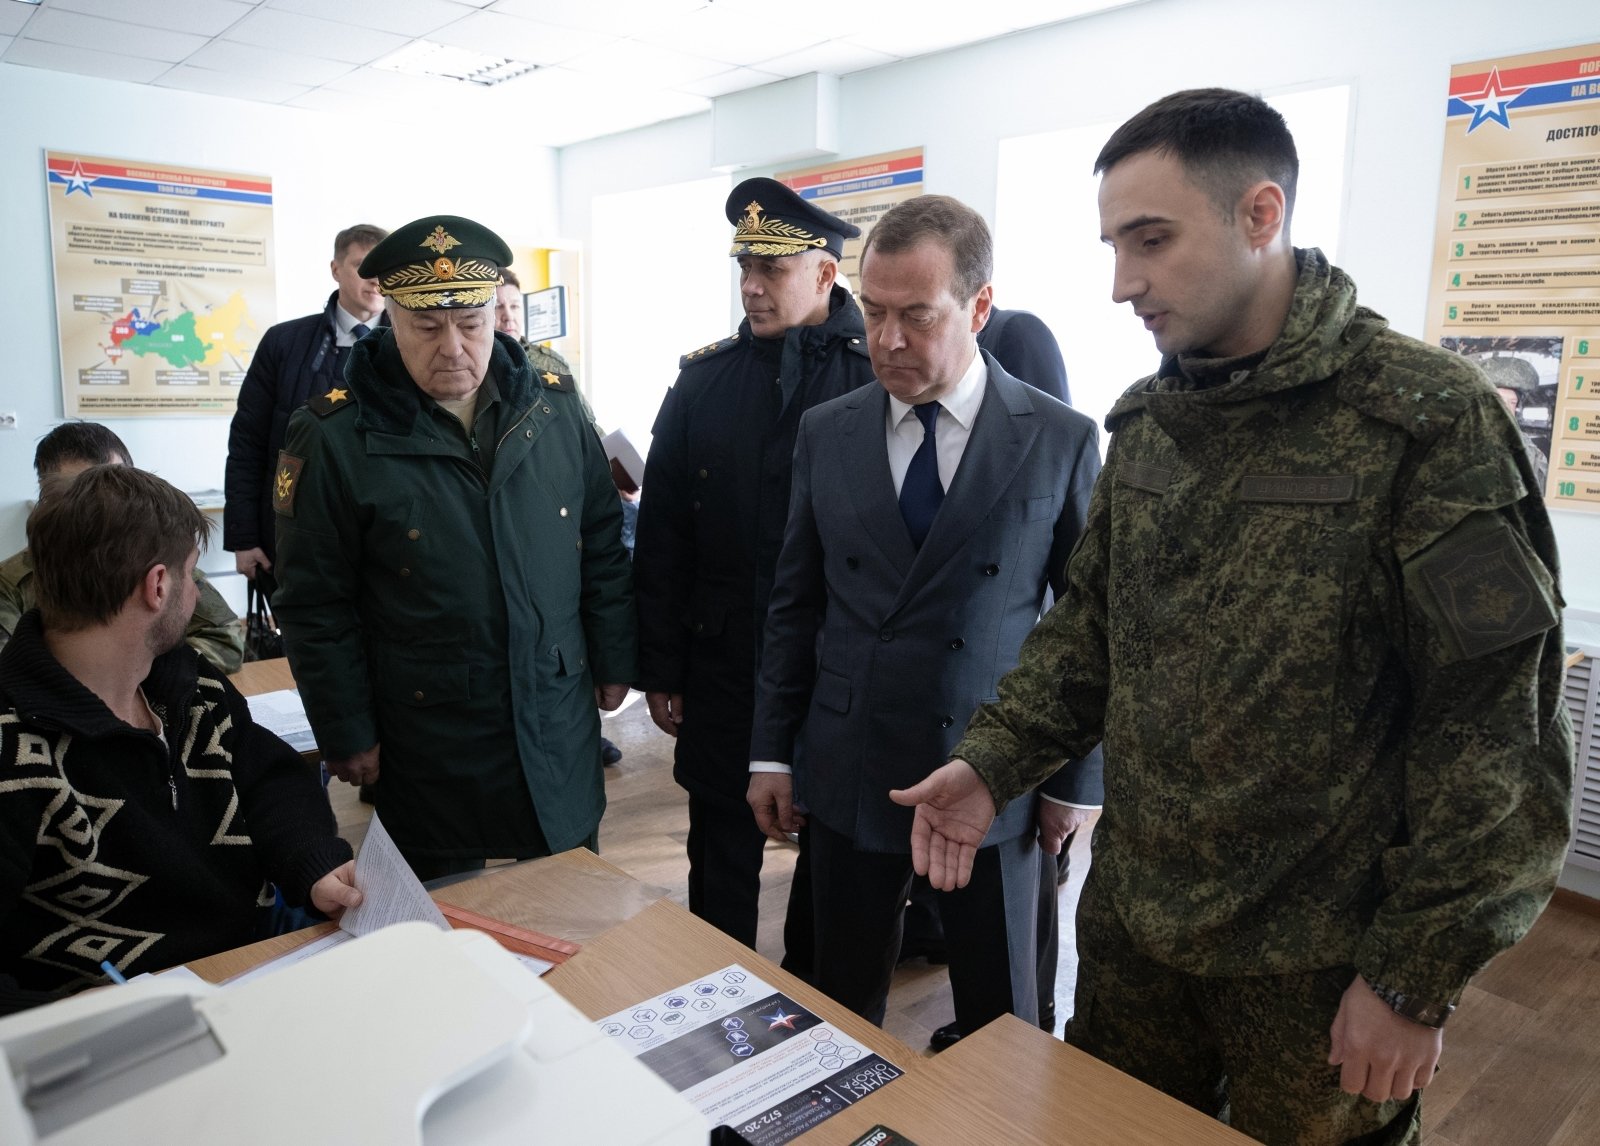 Medvedevas spjaudosi grasinimais: atidžiai stebėkite dangų